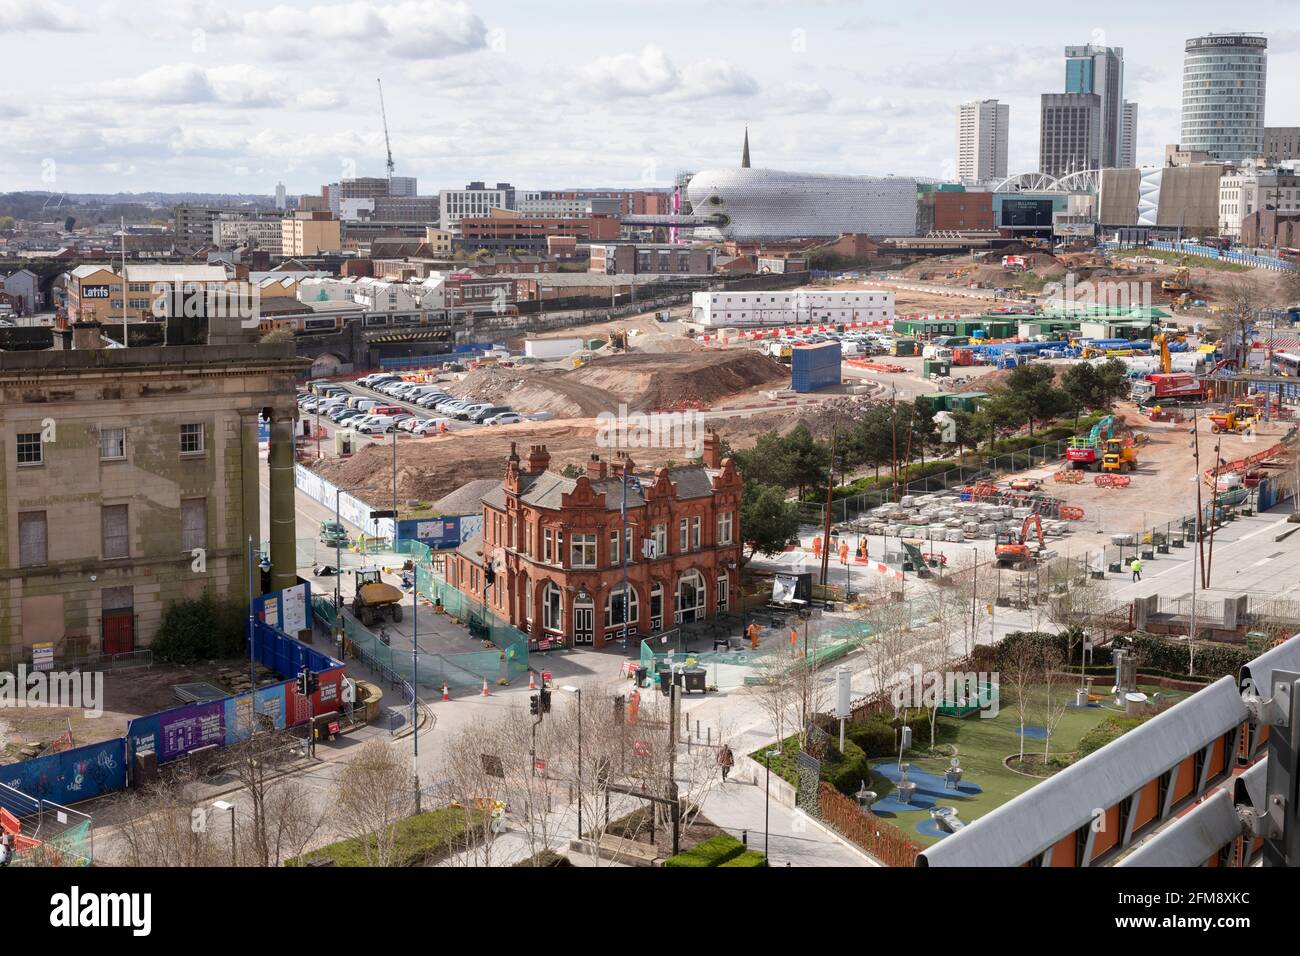 El sitio de construcción de HS2 en Birmingham. La estación de Curzon Street es el edificio a la izquierda. Foto de stock